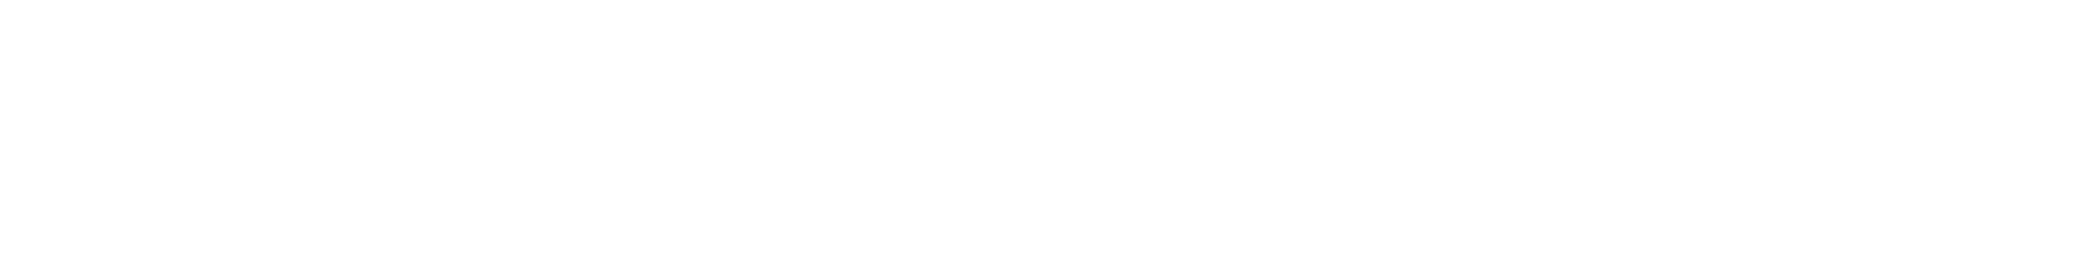 BuilderTek-Logo-White